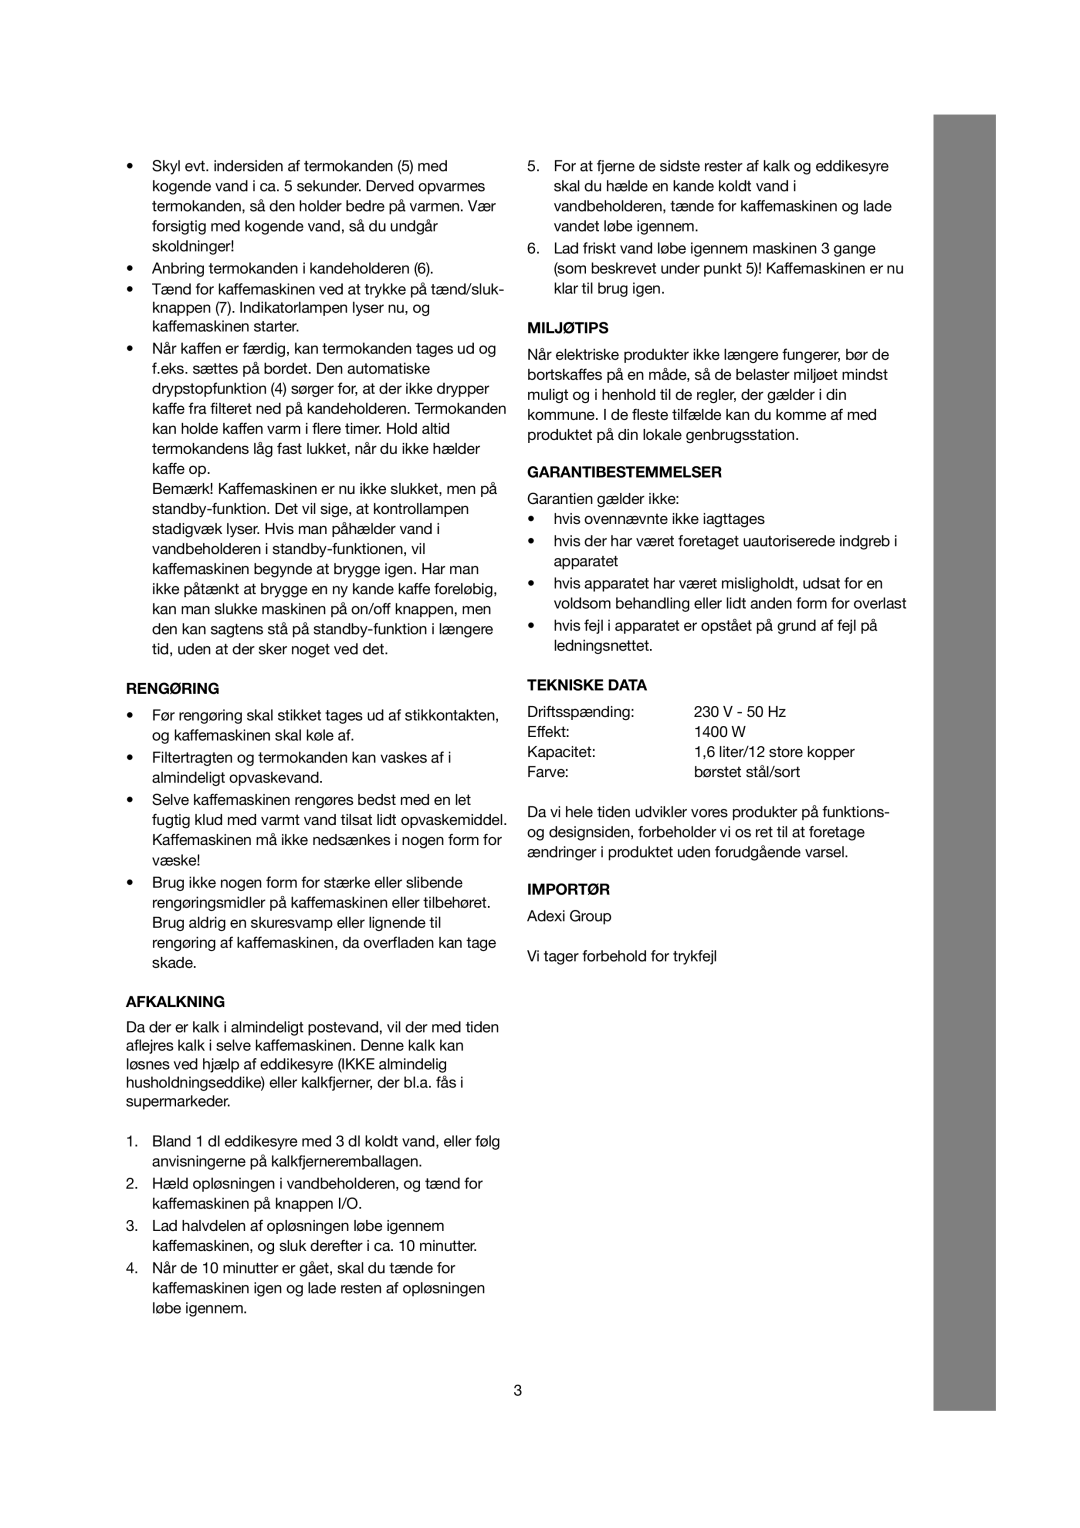 Melissa 245-030/040 manual Rengøring, Afkalkning, Miljøtips, Garantibestemmelser, Tekniske Data, Importør 